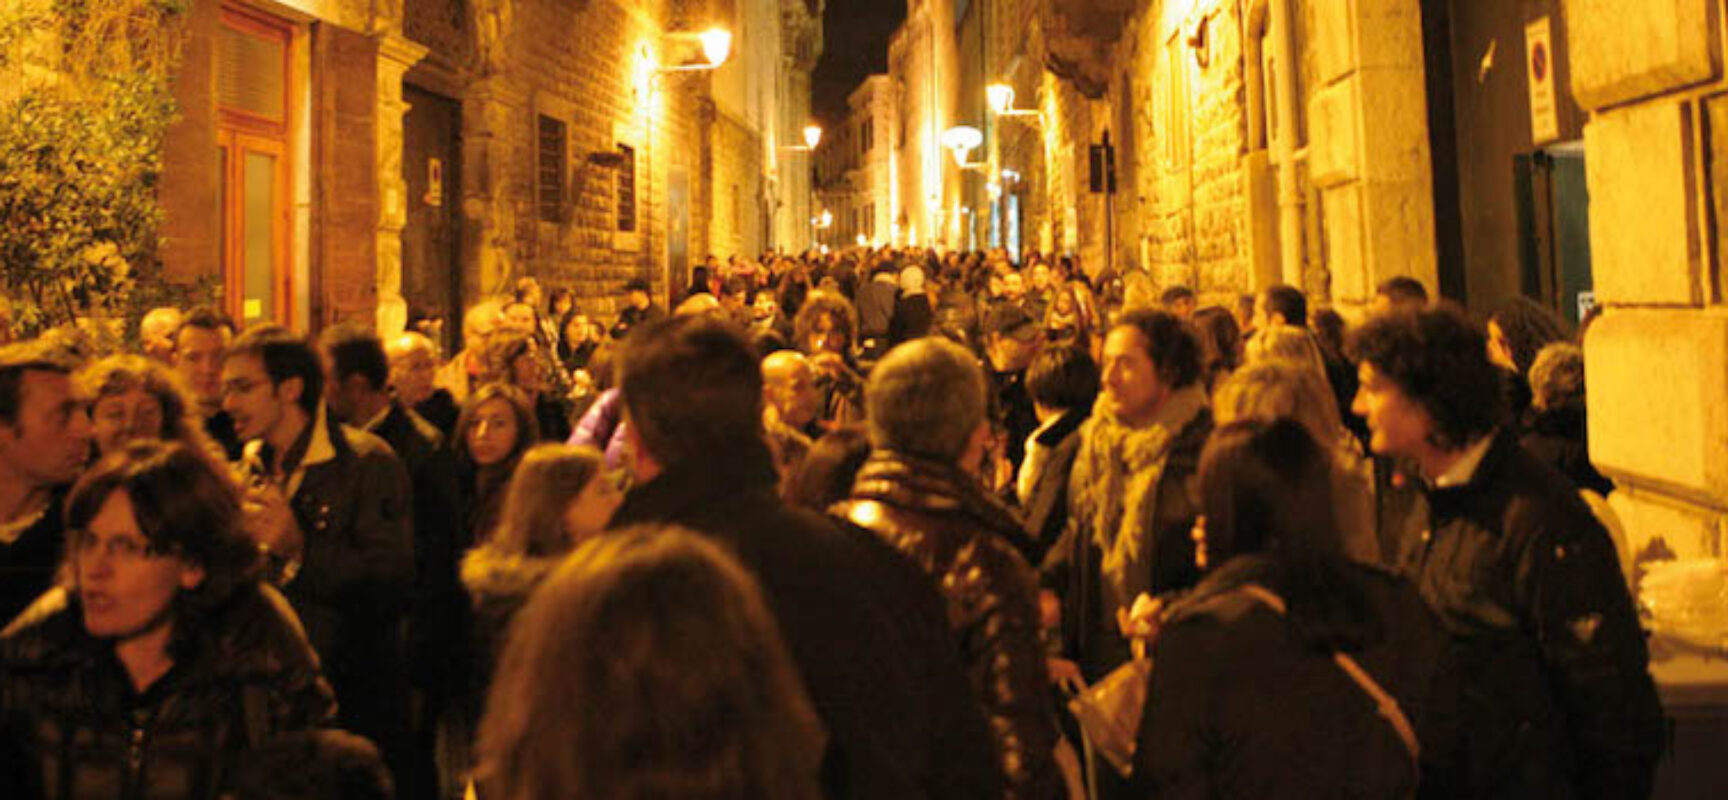 Calici nel Borgo Antico: oggi la prima serata con l’accensione delle luci d’artista